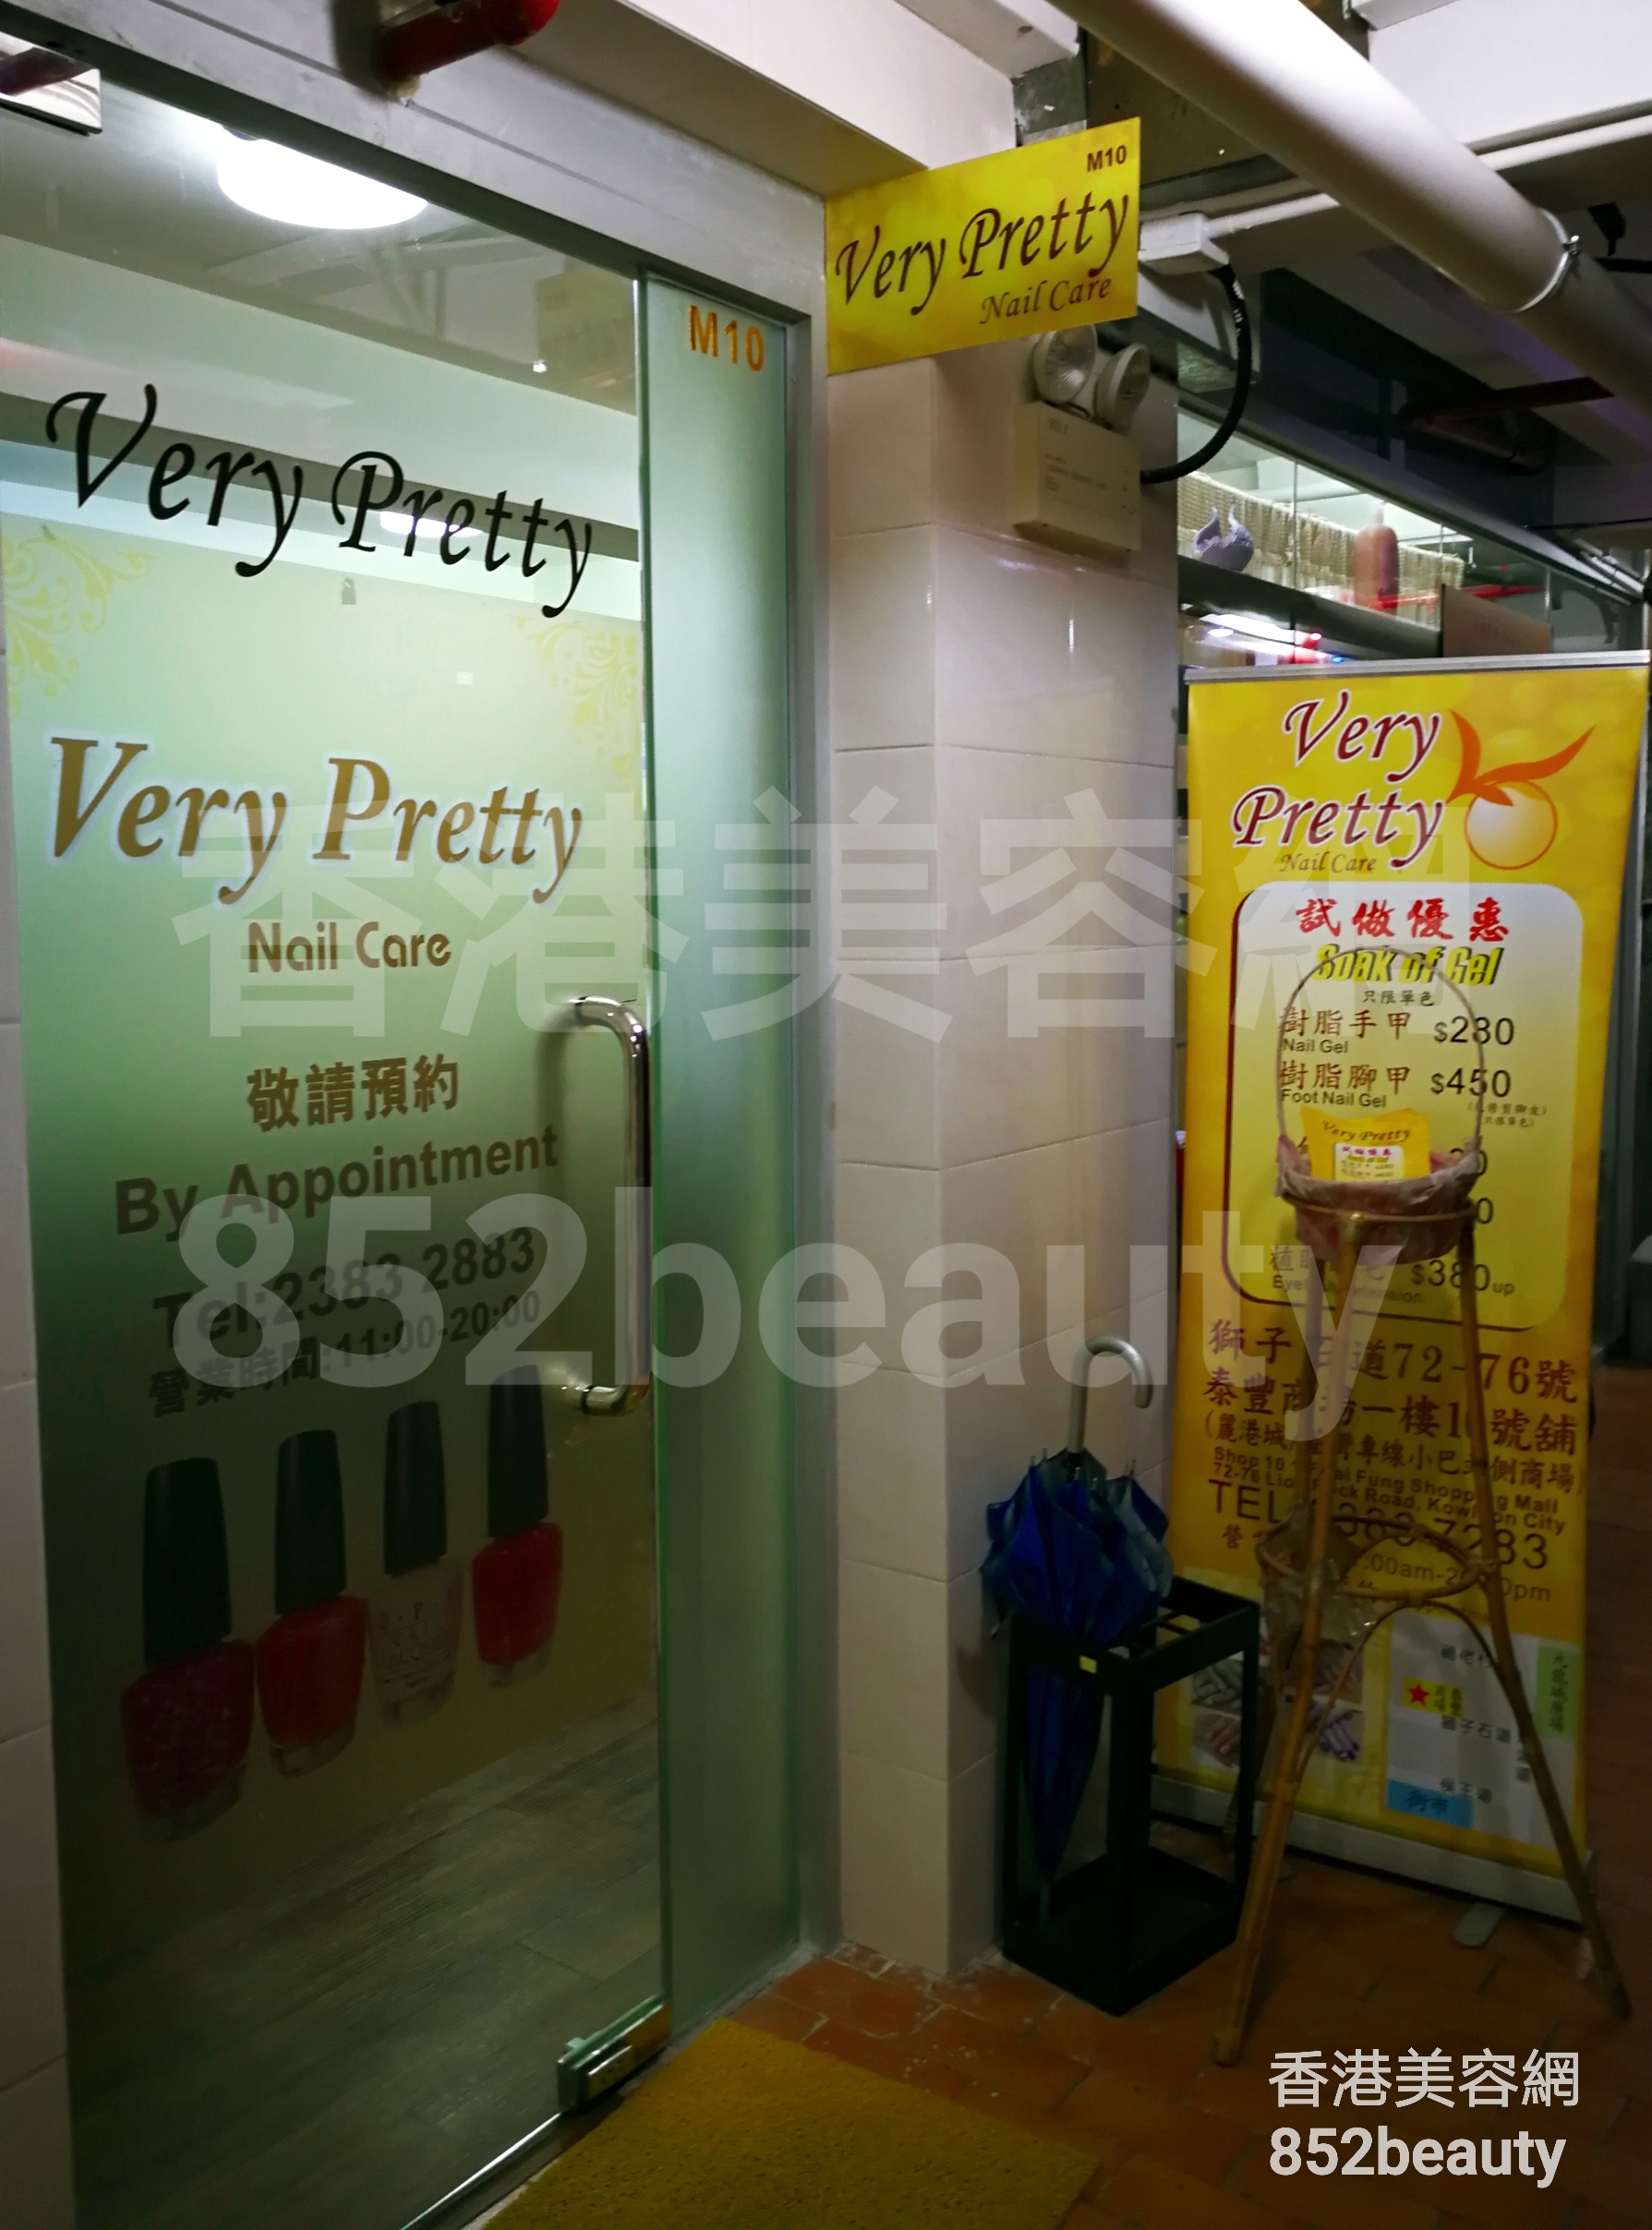 香港美容網 Hong Kong Beauty Salon 美容院 / 美容師: Very Pretty Nail Care